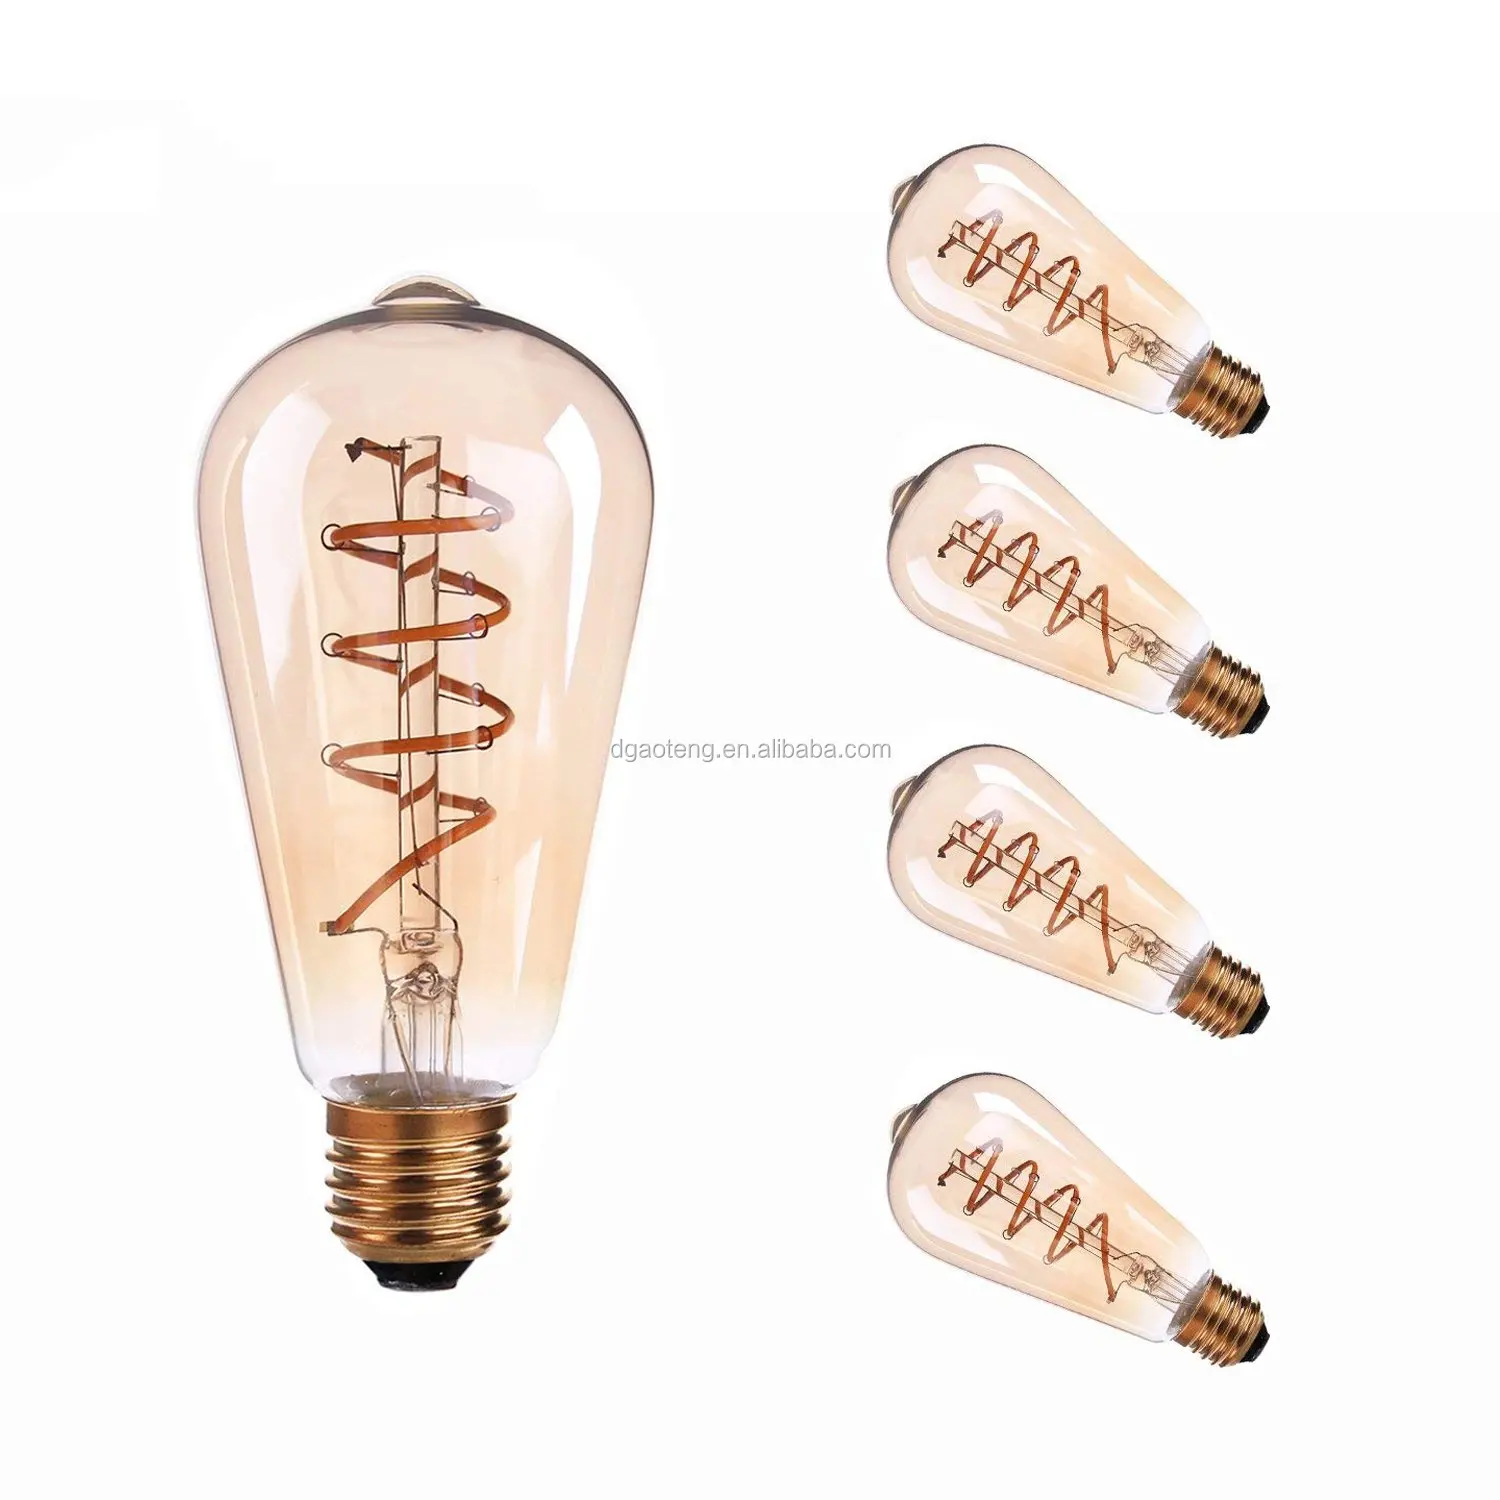 ST64 3W Spiral Led Filament Light  25 Watt Edison Bulb Equivalent  Globe Bulb Amber Glass E26/E27 Base  Super Warm White 2200K